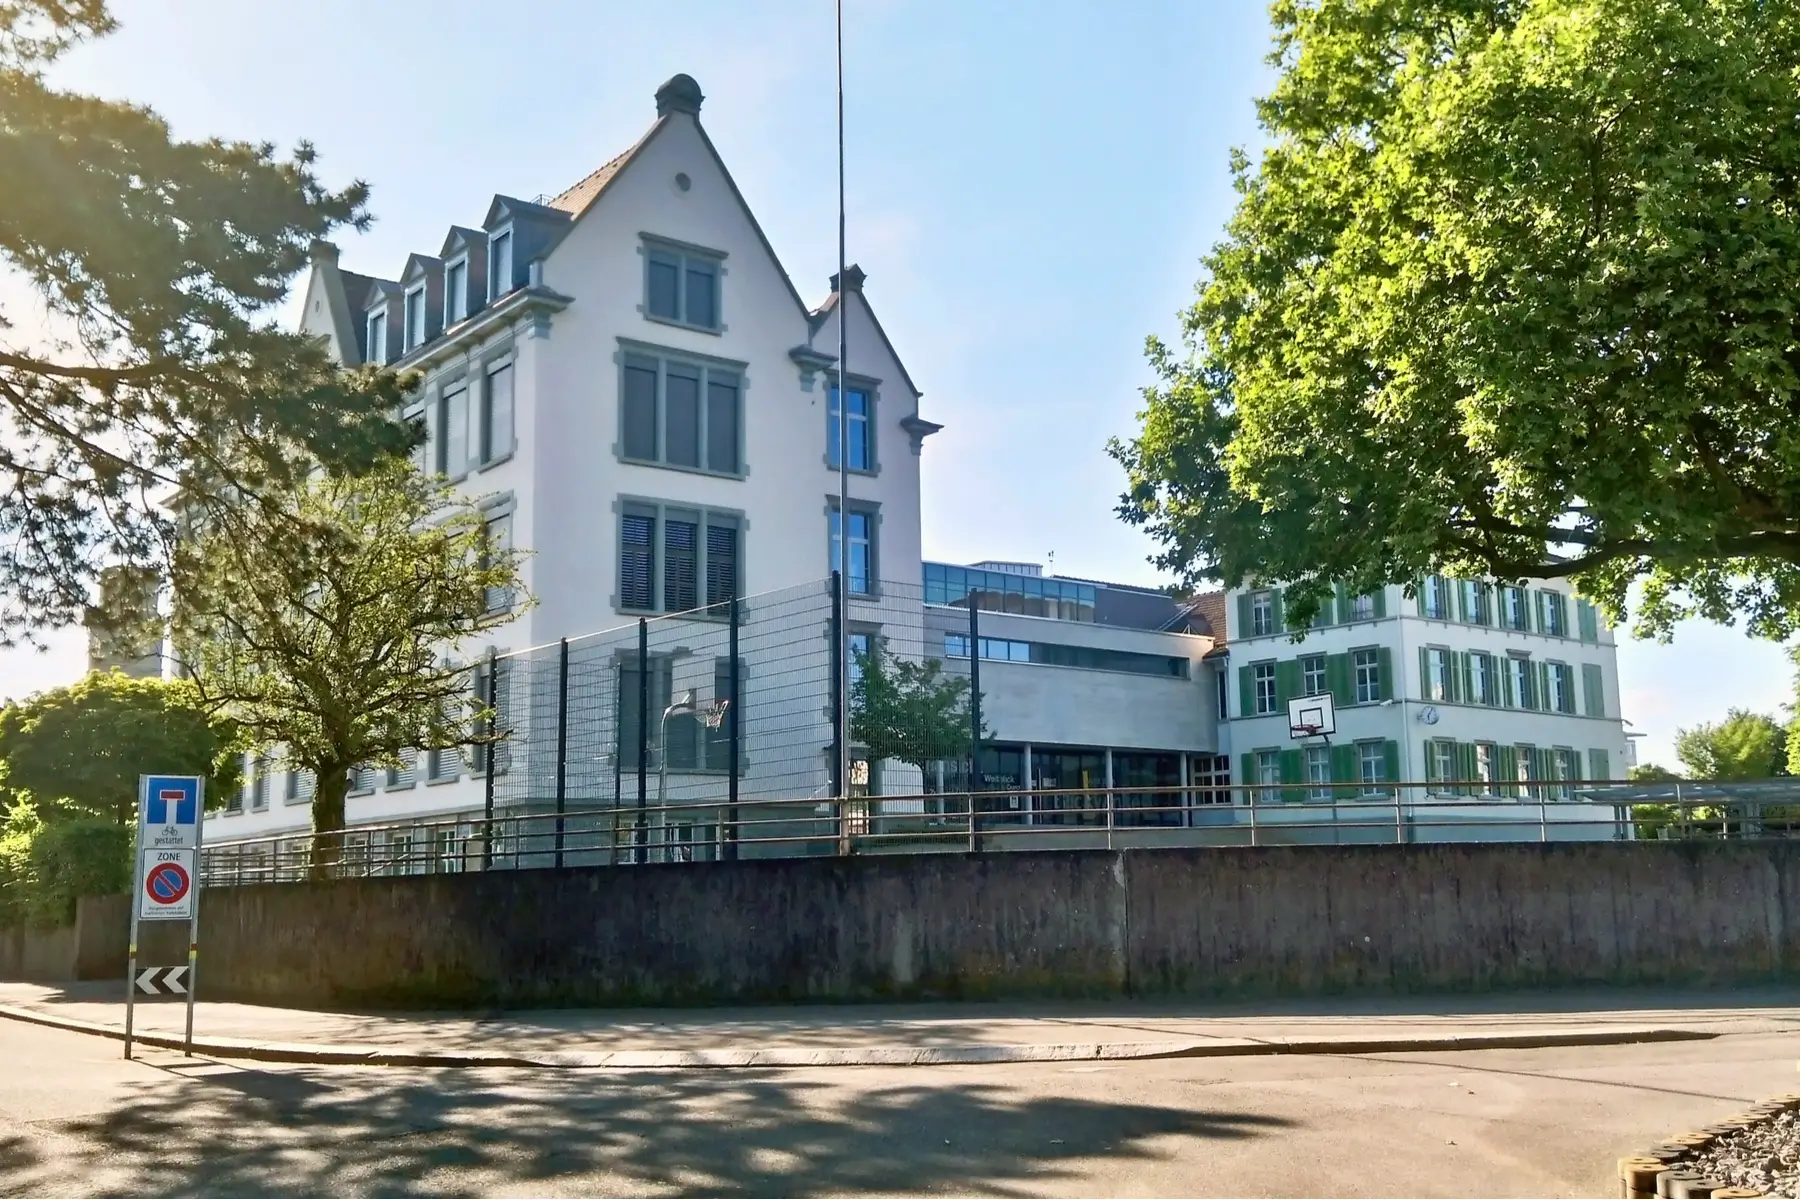 School in Zurich, Switzerland